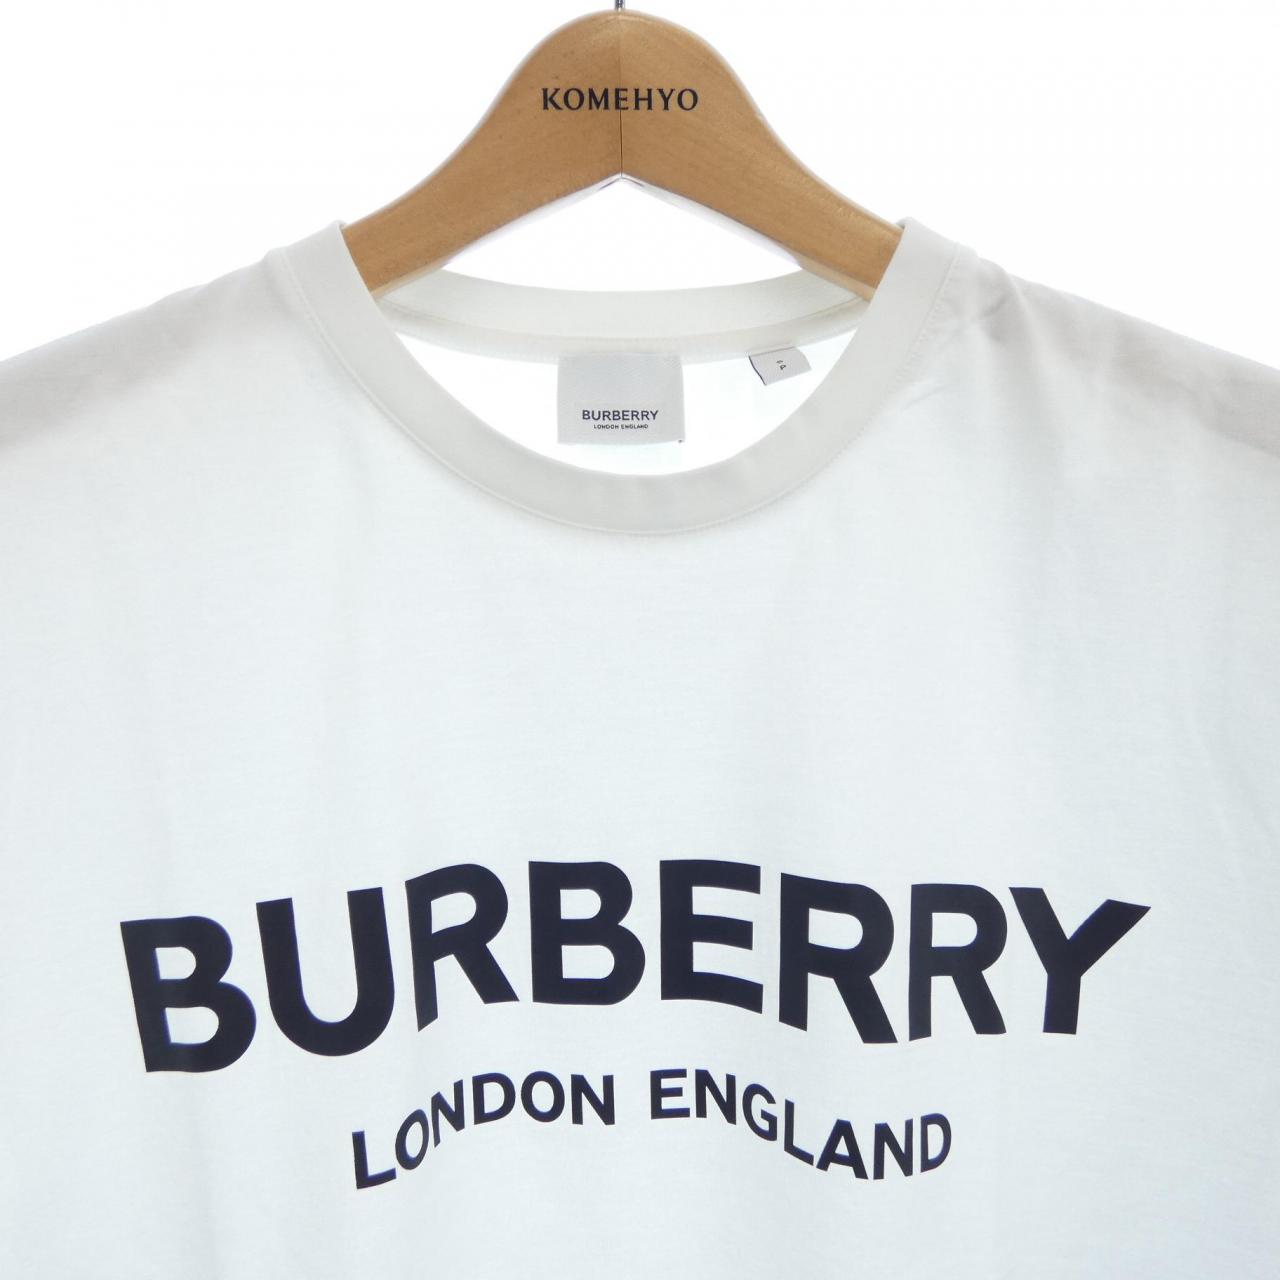 バーバリー BURBERRY Tシャツ